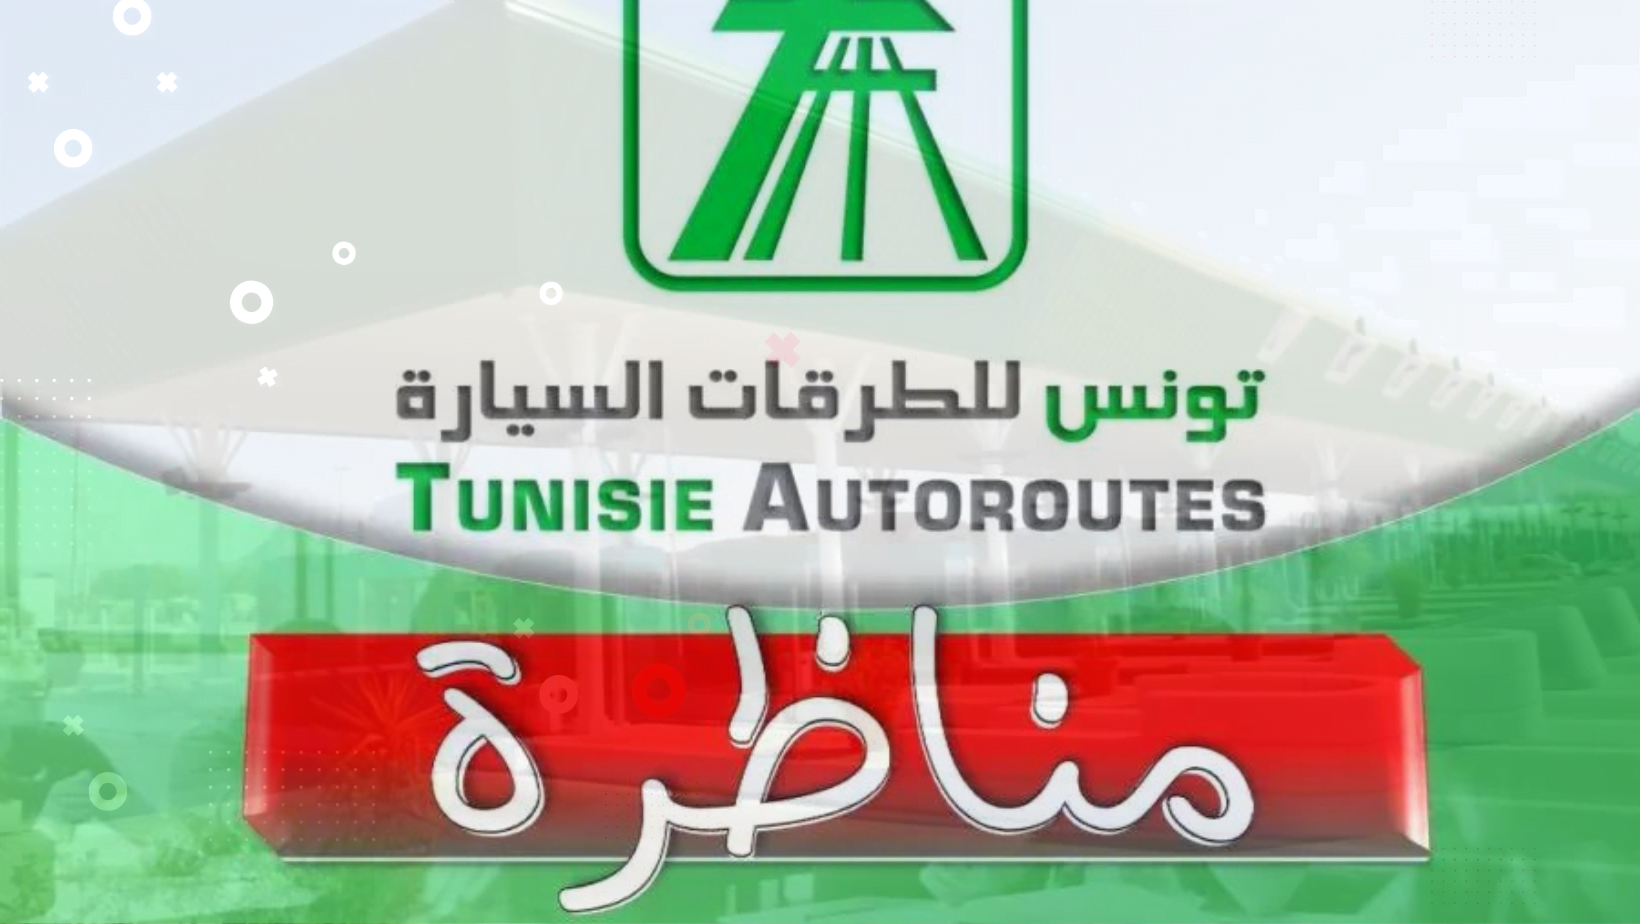 مناظرة شركة تونس الطرقات السيارة لإنتداب أعوان